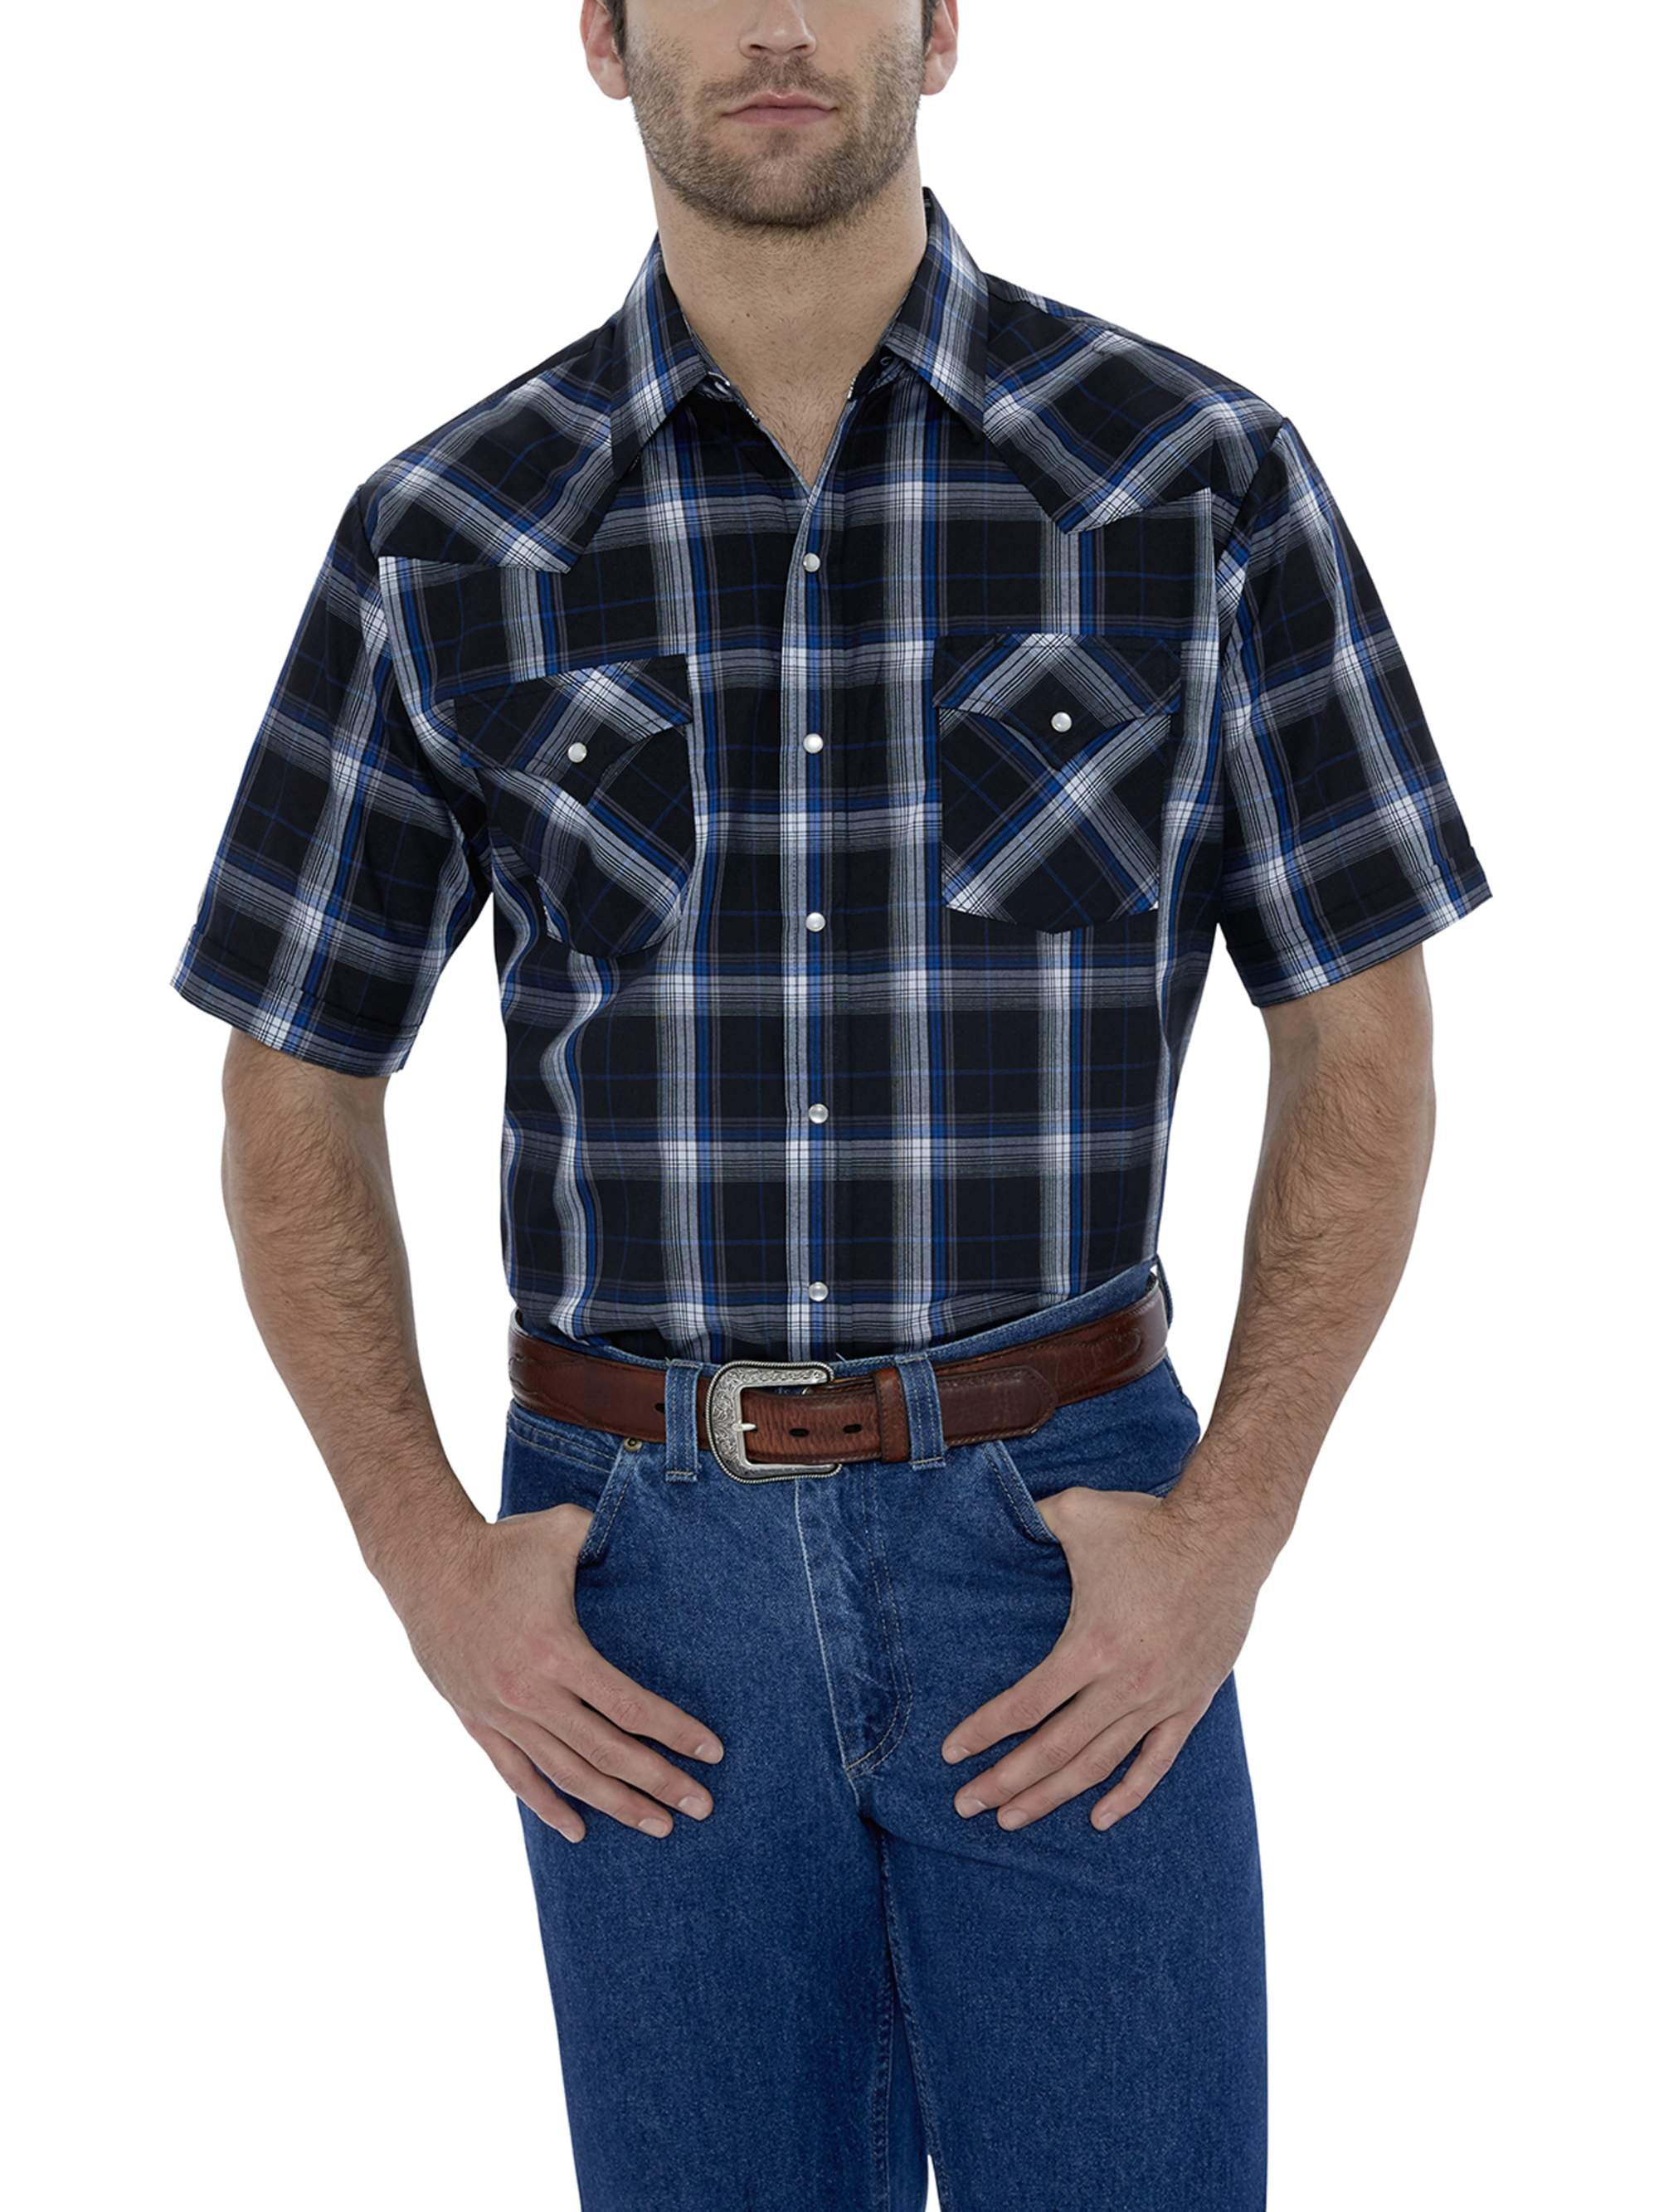 Ely Cattleman Men's Short Sleeve Classic Plaid Shirt - Walmart.com